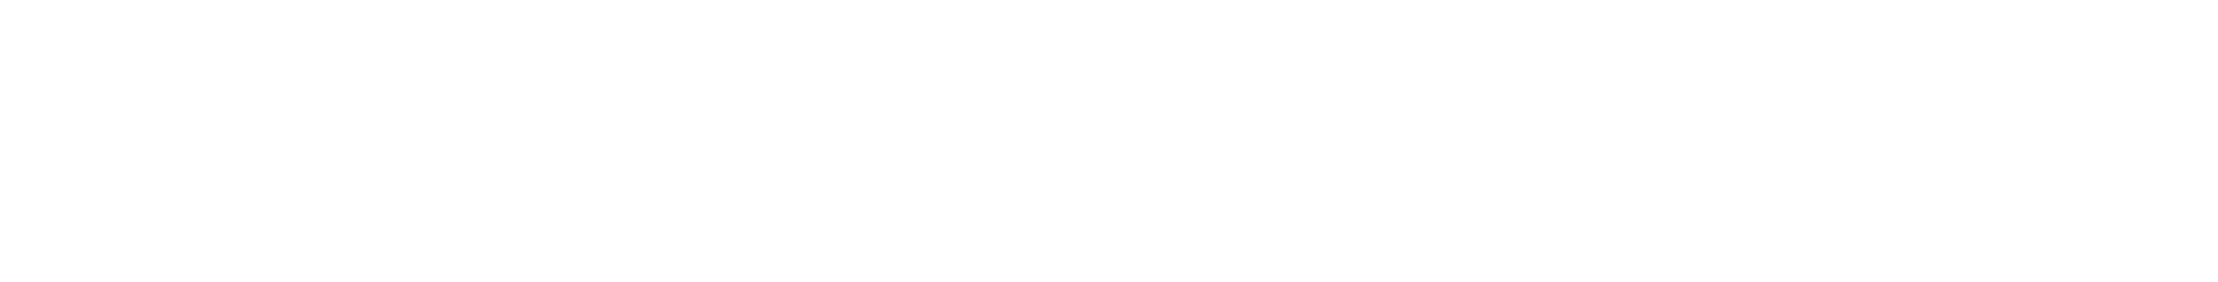 faq_header